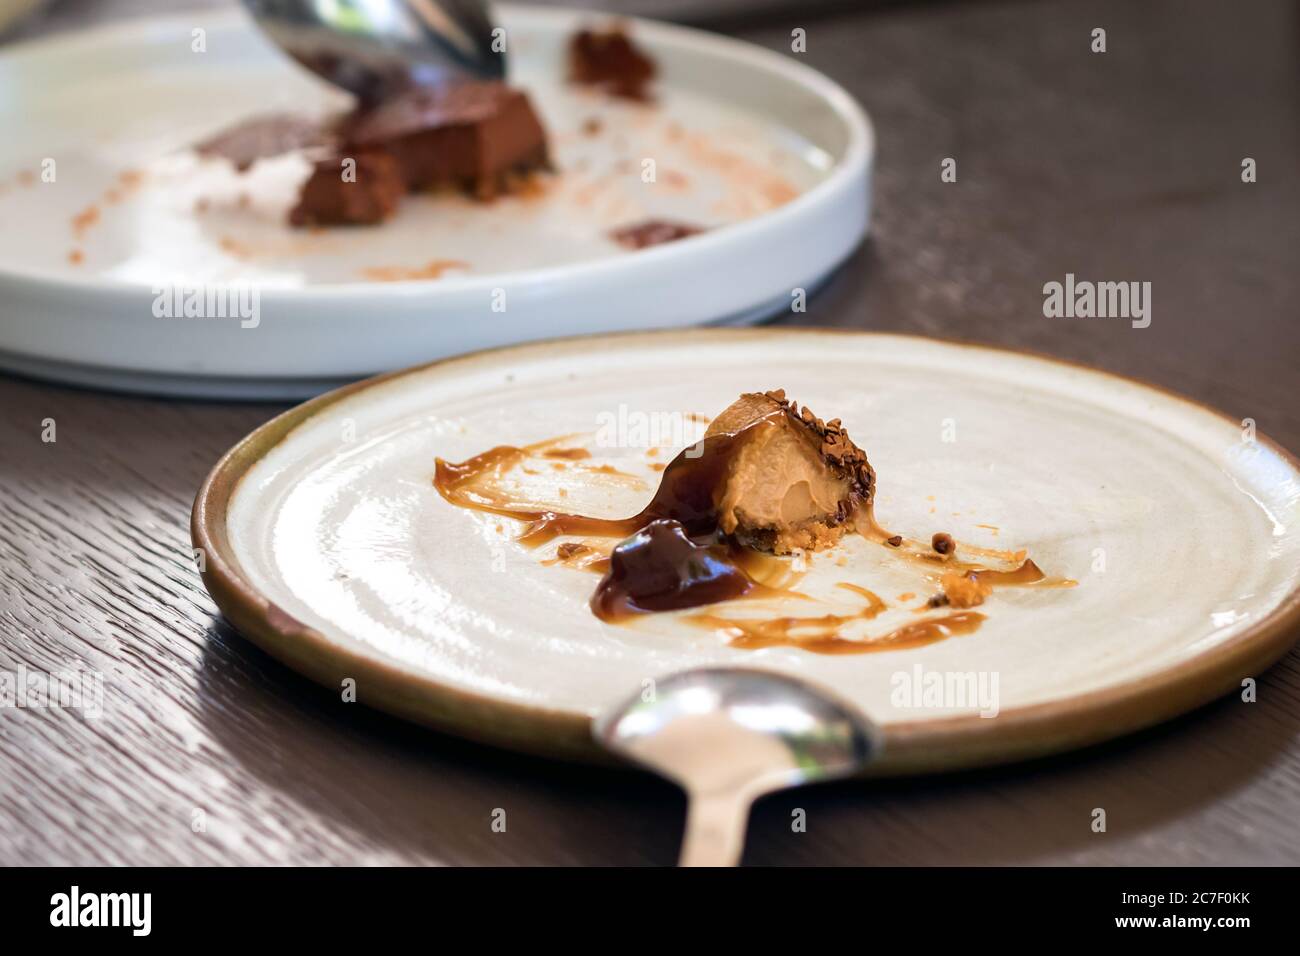 Un plato con postre de calabaza sobrante sobre una mesa Foto de stock